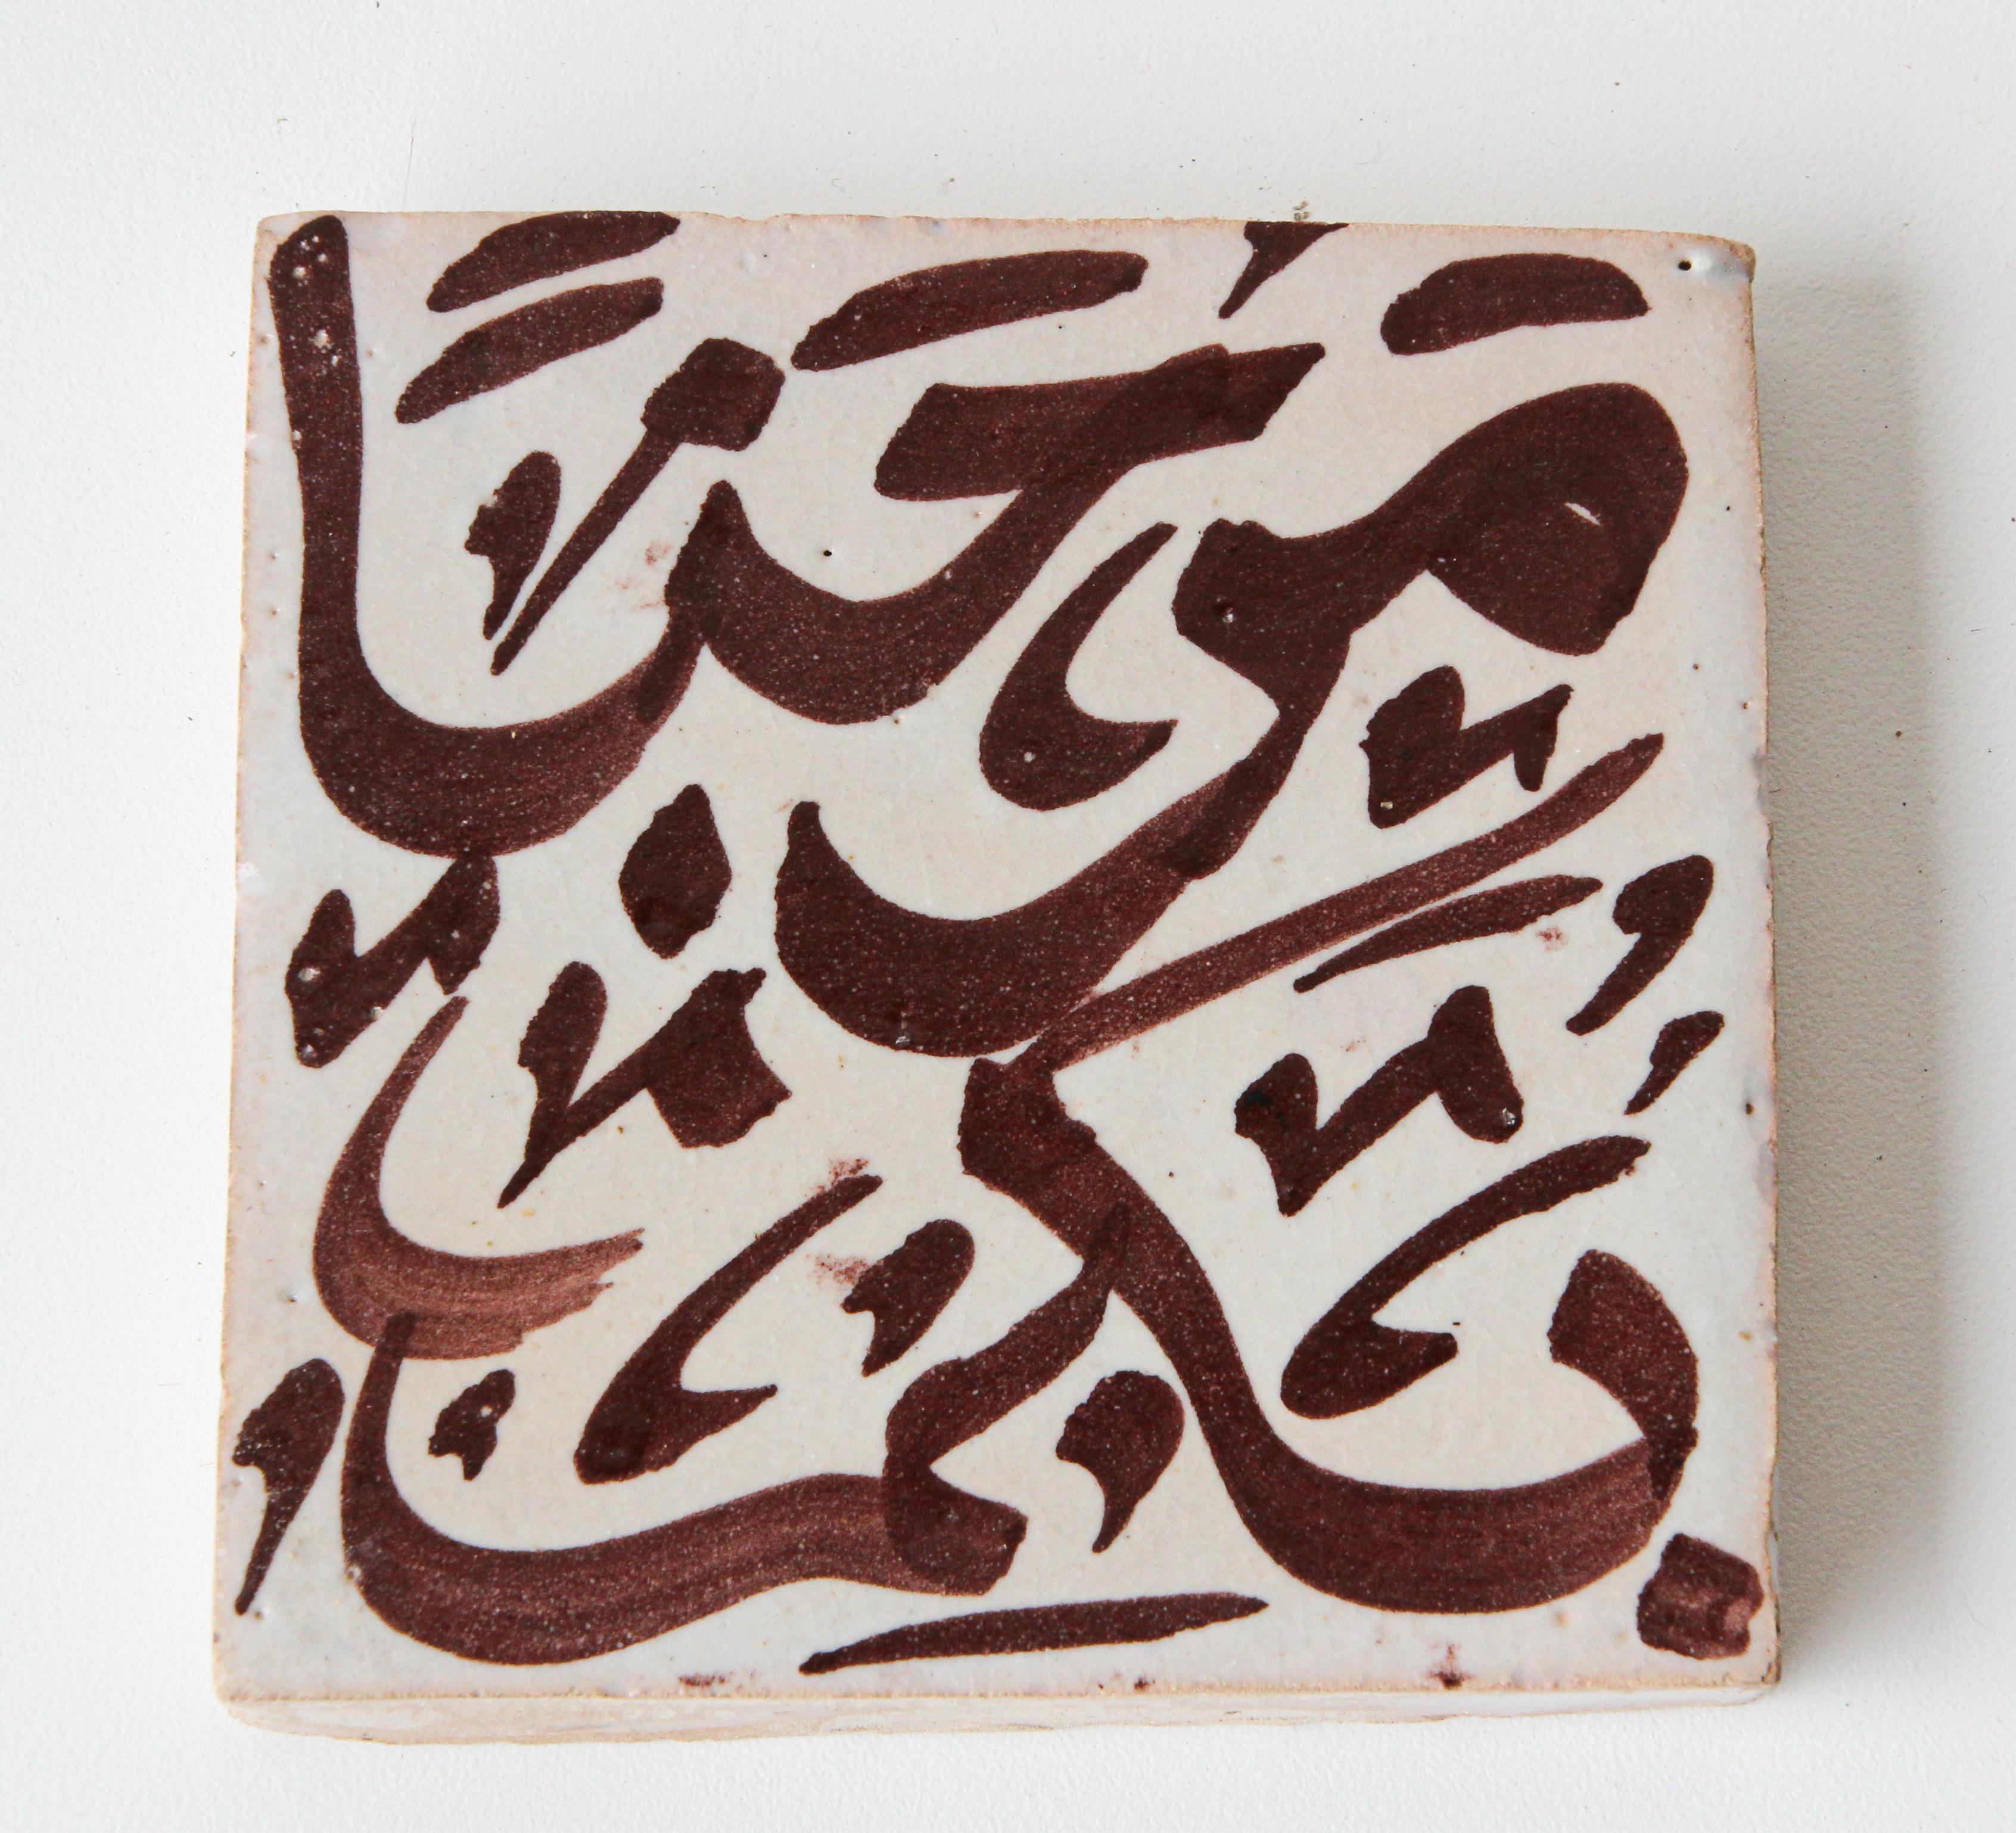 Carreau décoratif marocain artisanal avec écriture arabe peinte à la main en brun sur céramique ivoire émaillée craquelée.
Écriture arabe sur un carreau de céramique peint à la main par un artiste de Fès, au Maroc.
Grand zellige décoratif d'art